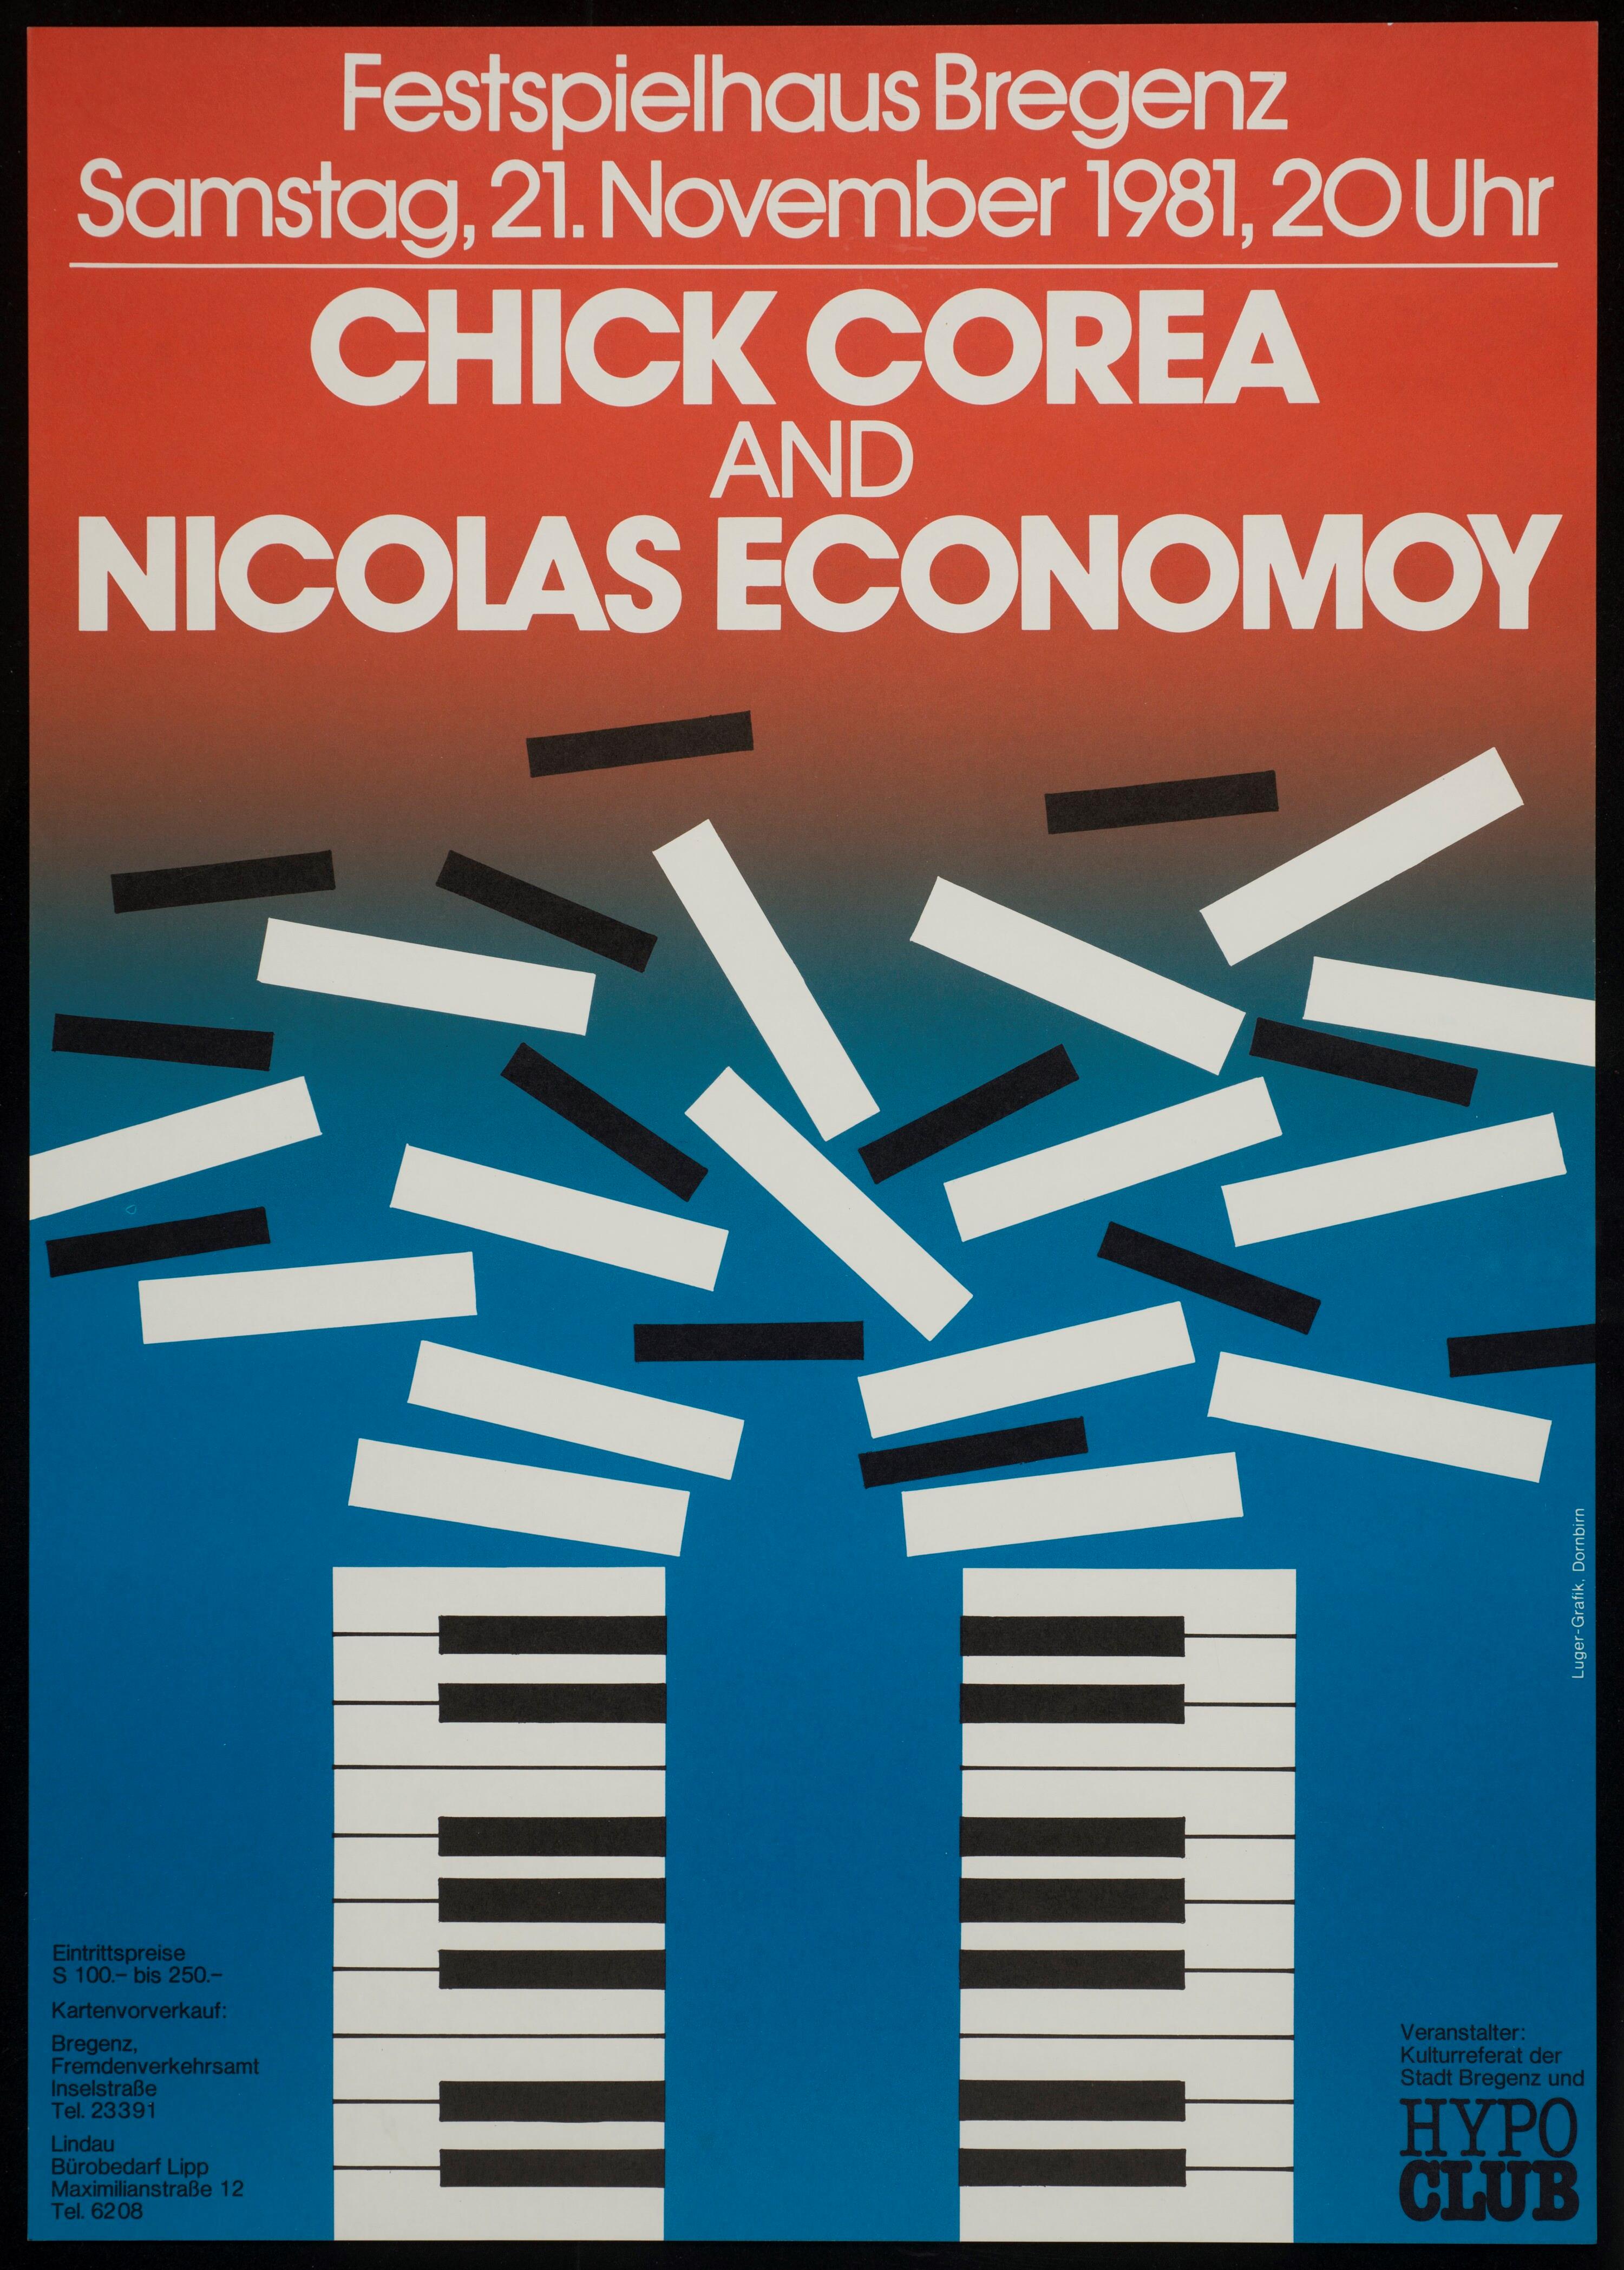 Chick Corea and Nicolas Economoy></div>


    <hr>
    <div class=